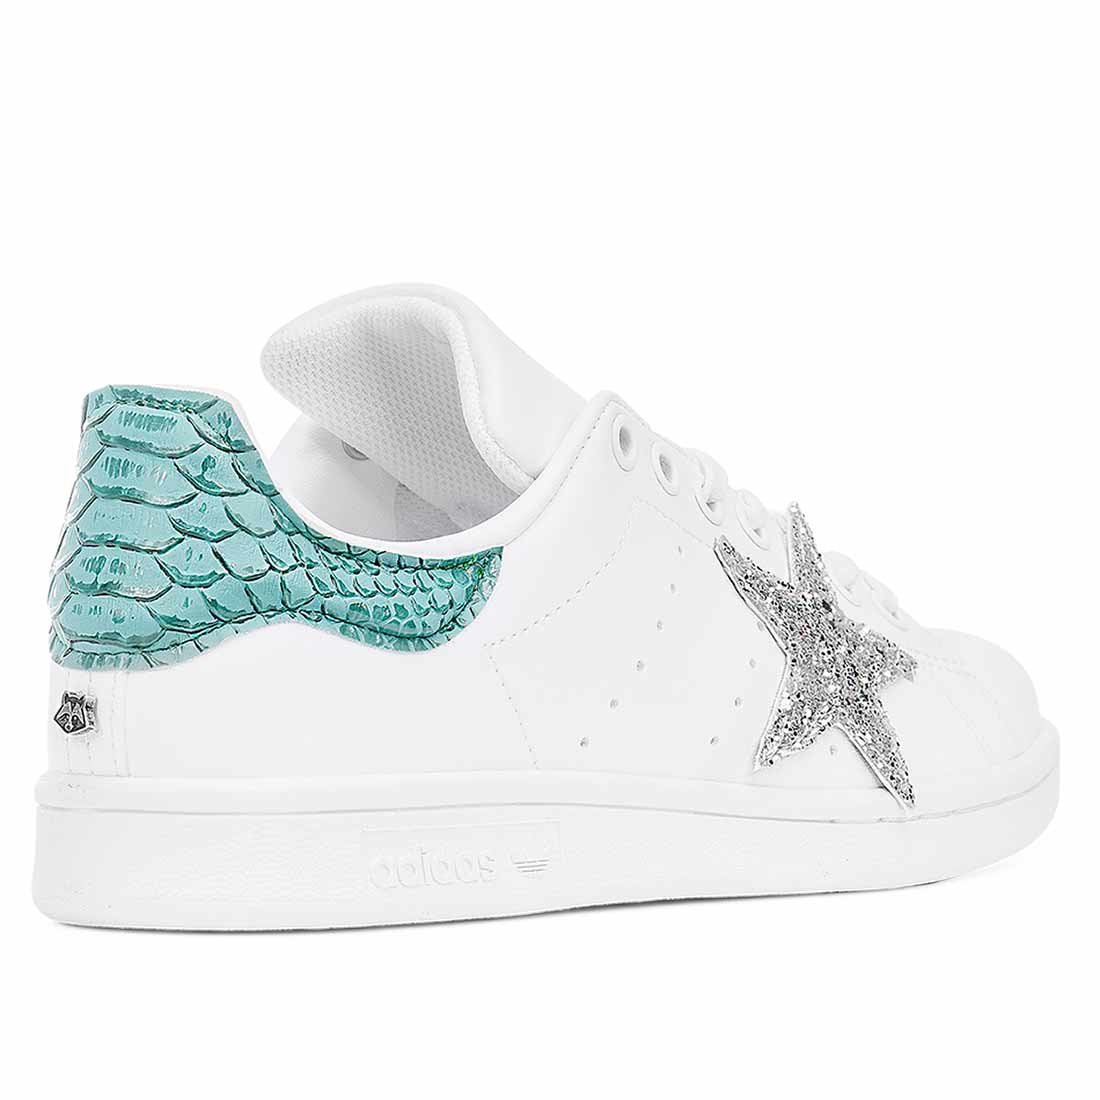 sneakers Adidas bianche con stella argento in glitter e pitone azzurro